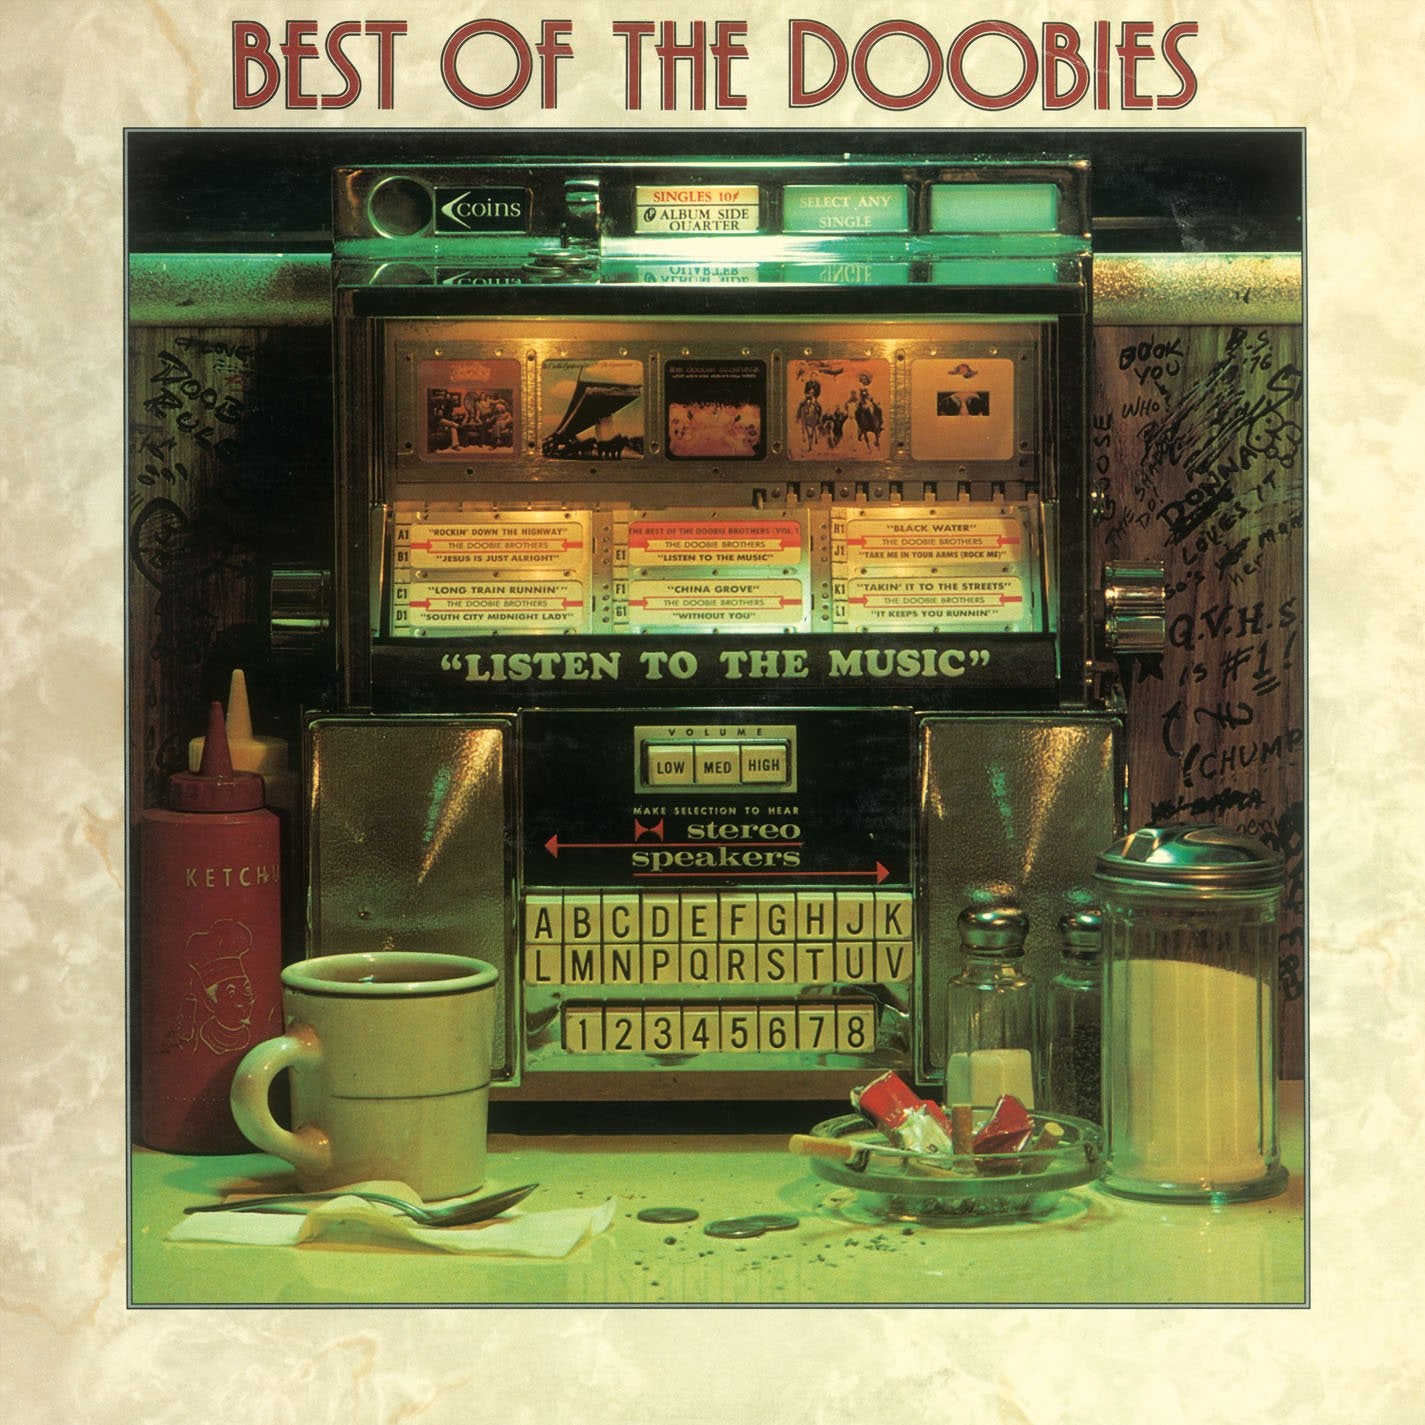 THE DOOBIE BROTHERS - BEST OF THE DOOBIES - VINYL LP